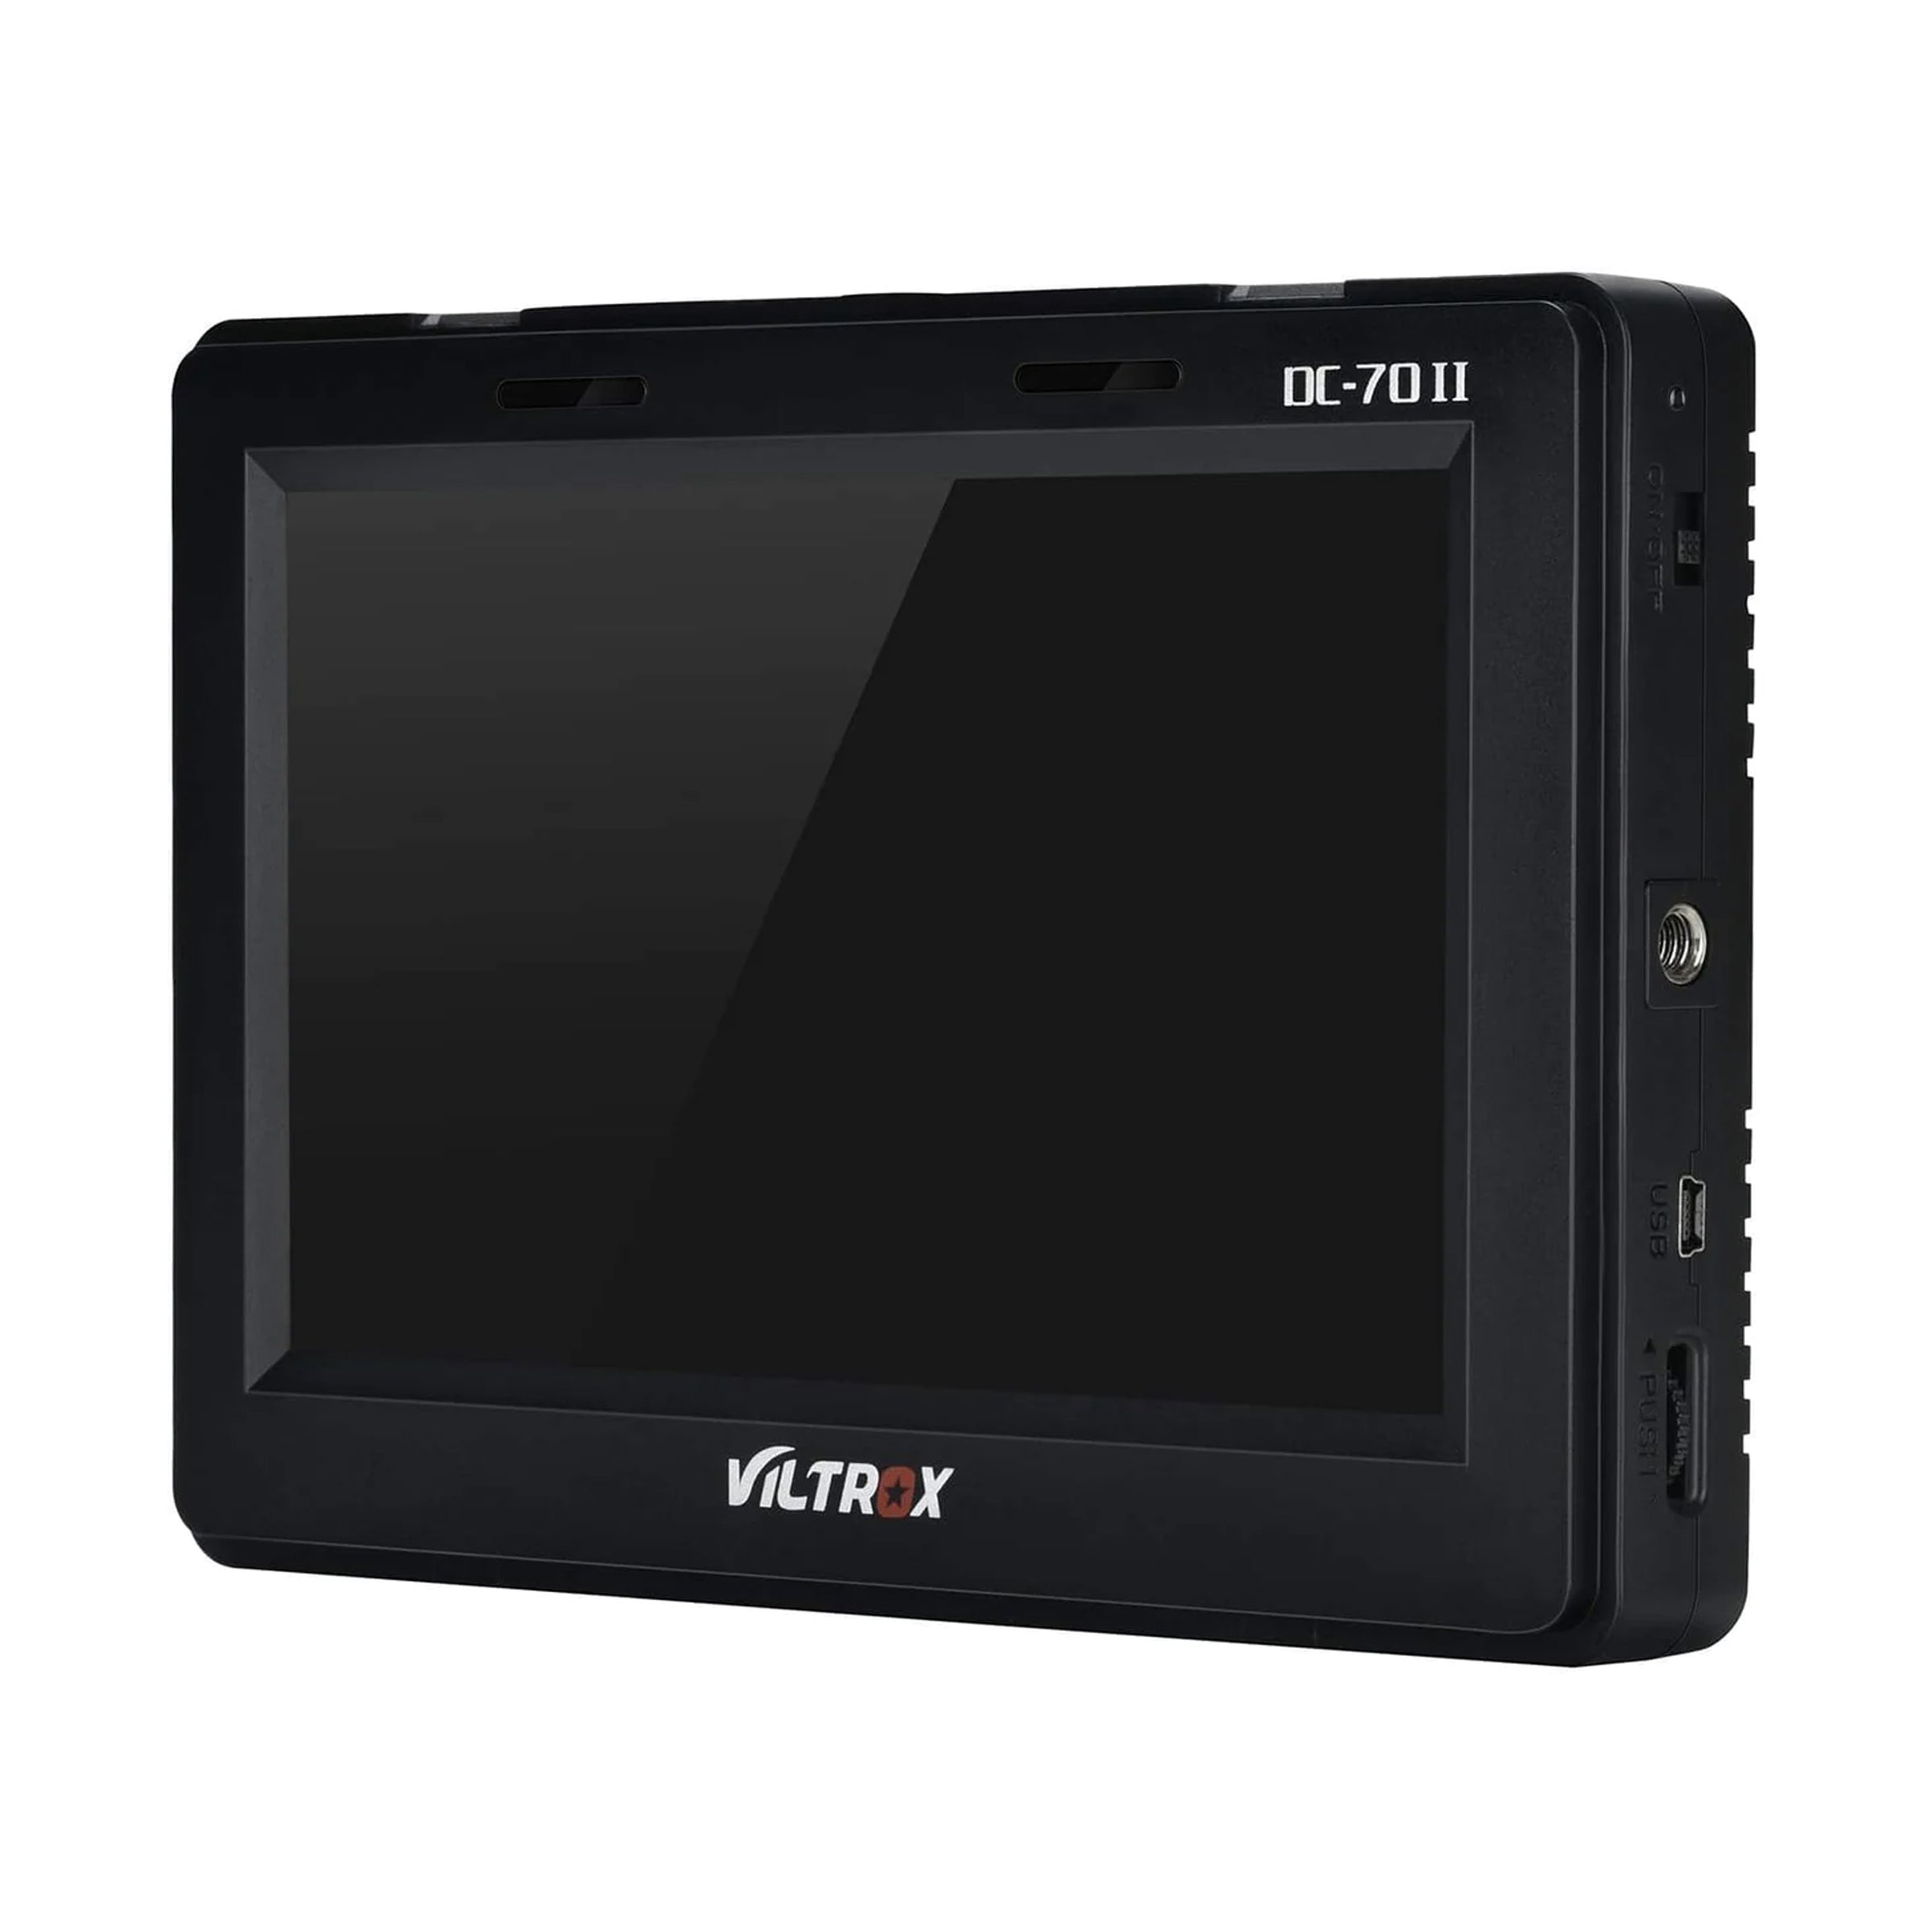 VILTROX DC-70 II 4K HDMI Field Monitor 7" TFT LCD HD Video Monitor